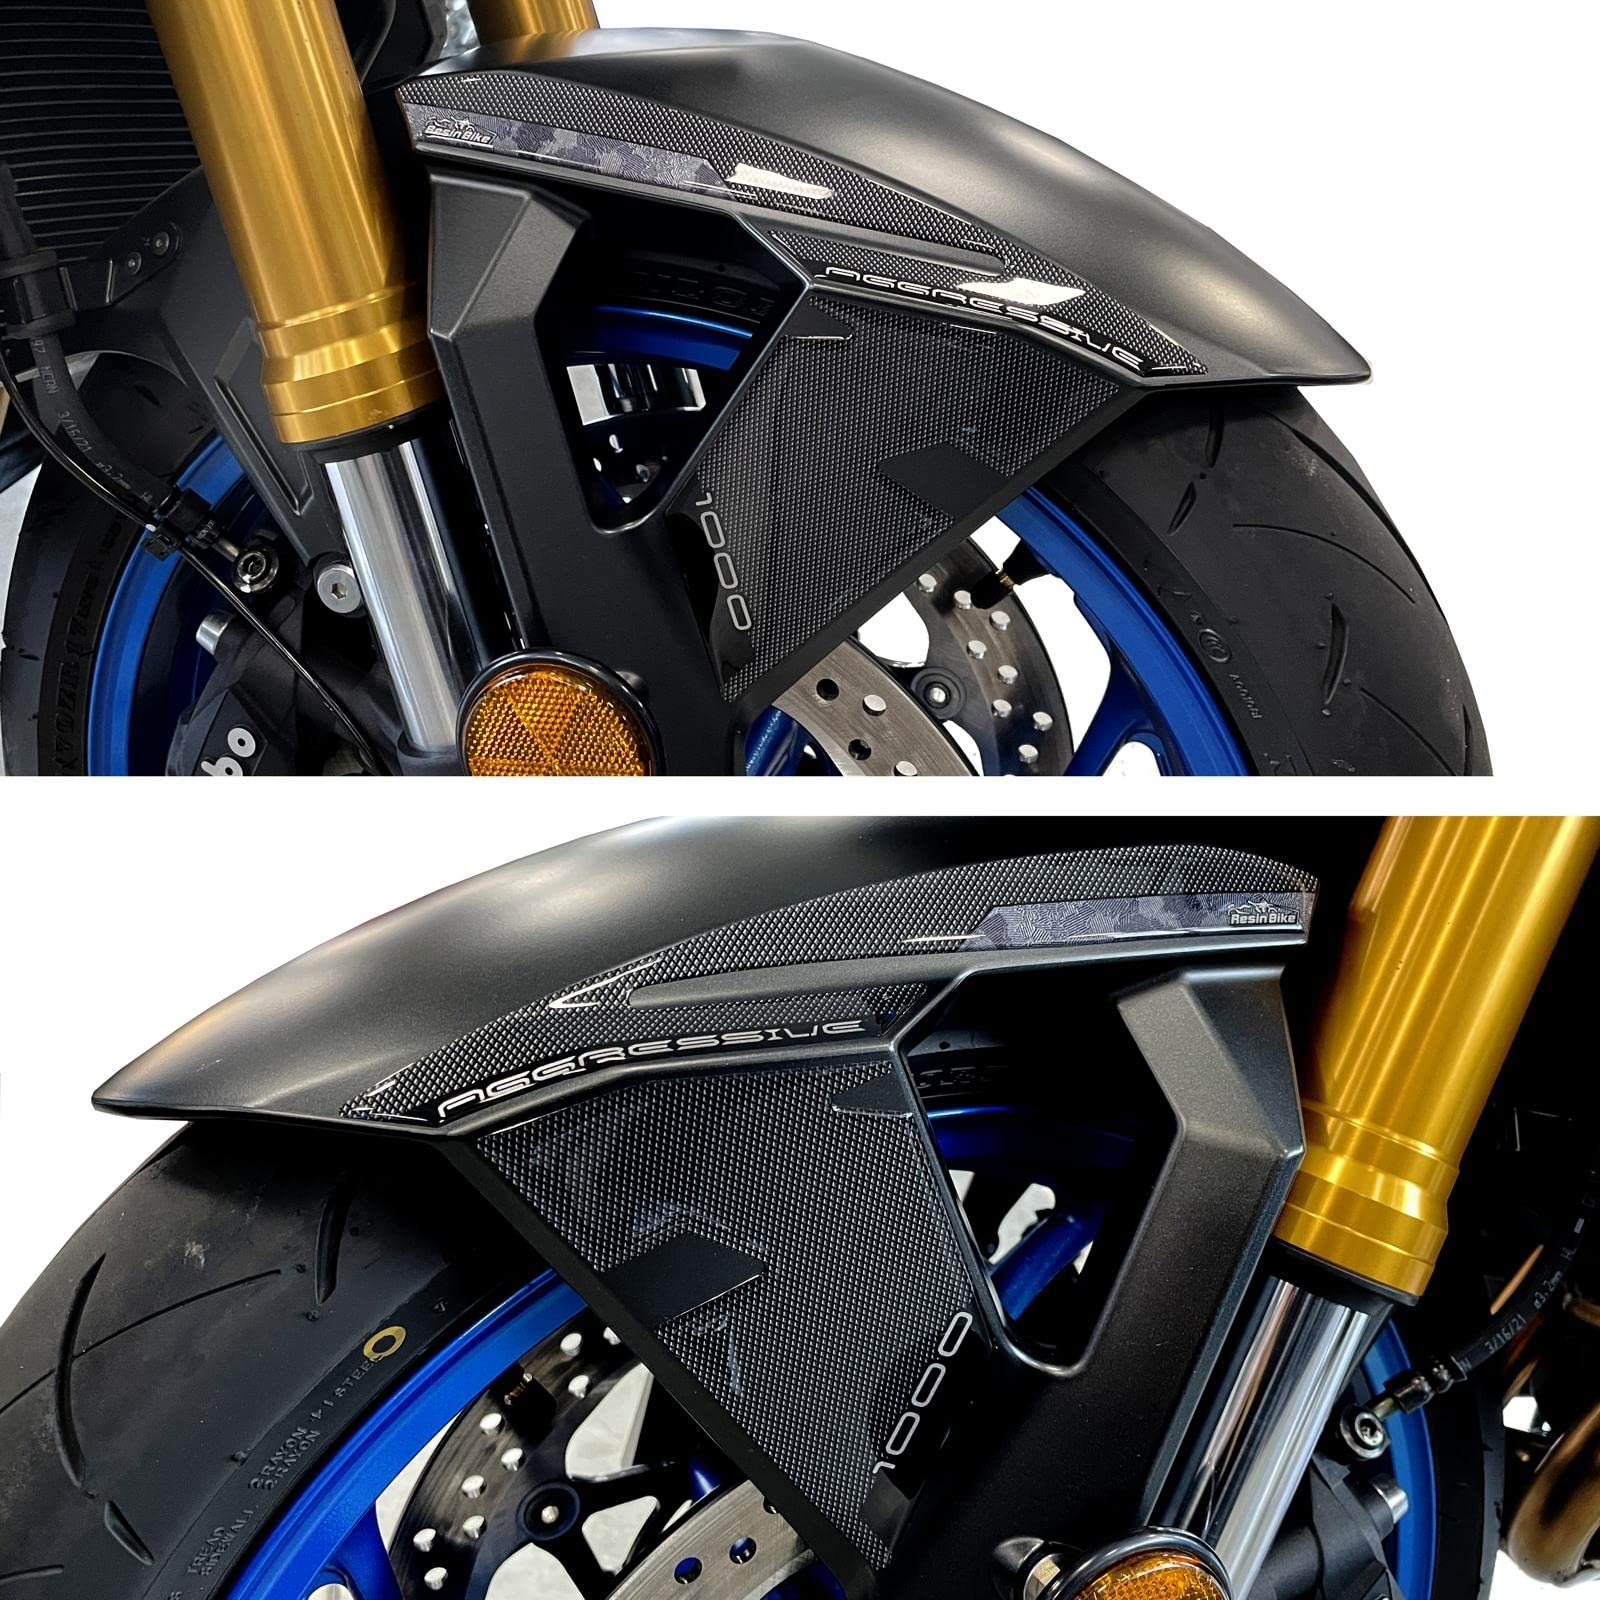 Resin Bike Aufkleber für Motorrad Kompatibel mit Suzuki GSX-S 1000 2021 2022 Blau Miami. Kotflügelschutz vor Stößen und Kratzern. 3D-Harzklebstoff - Stickers - Made in Italy von Resin Bike